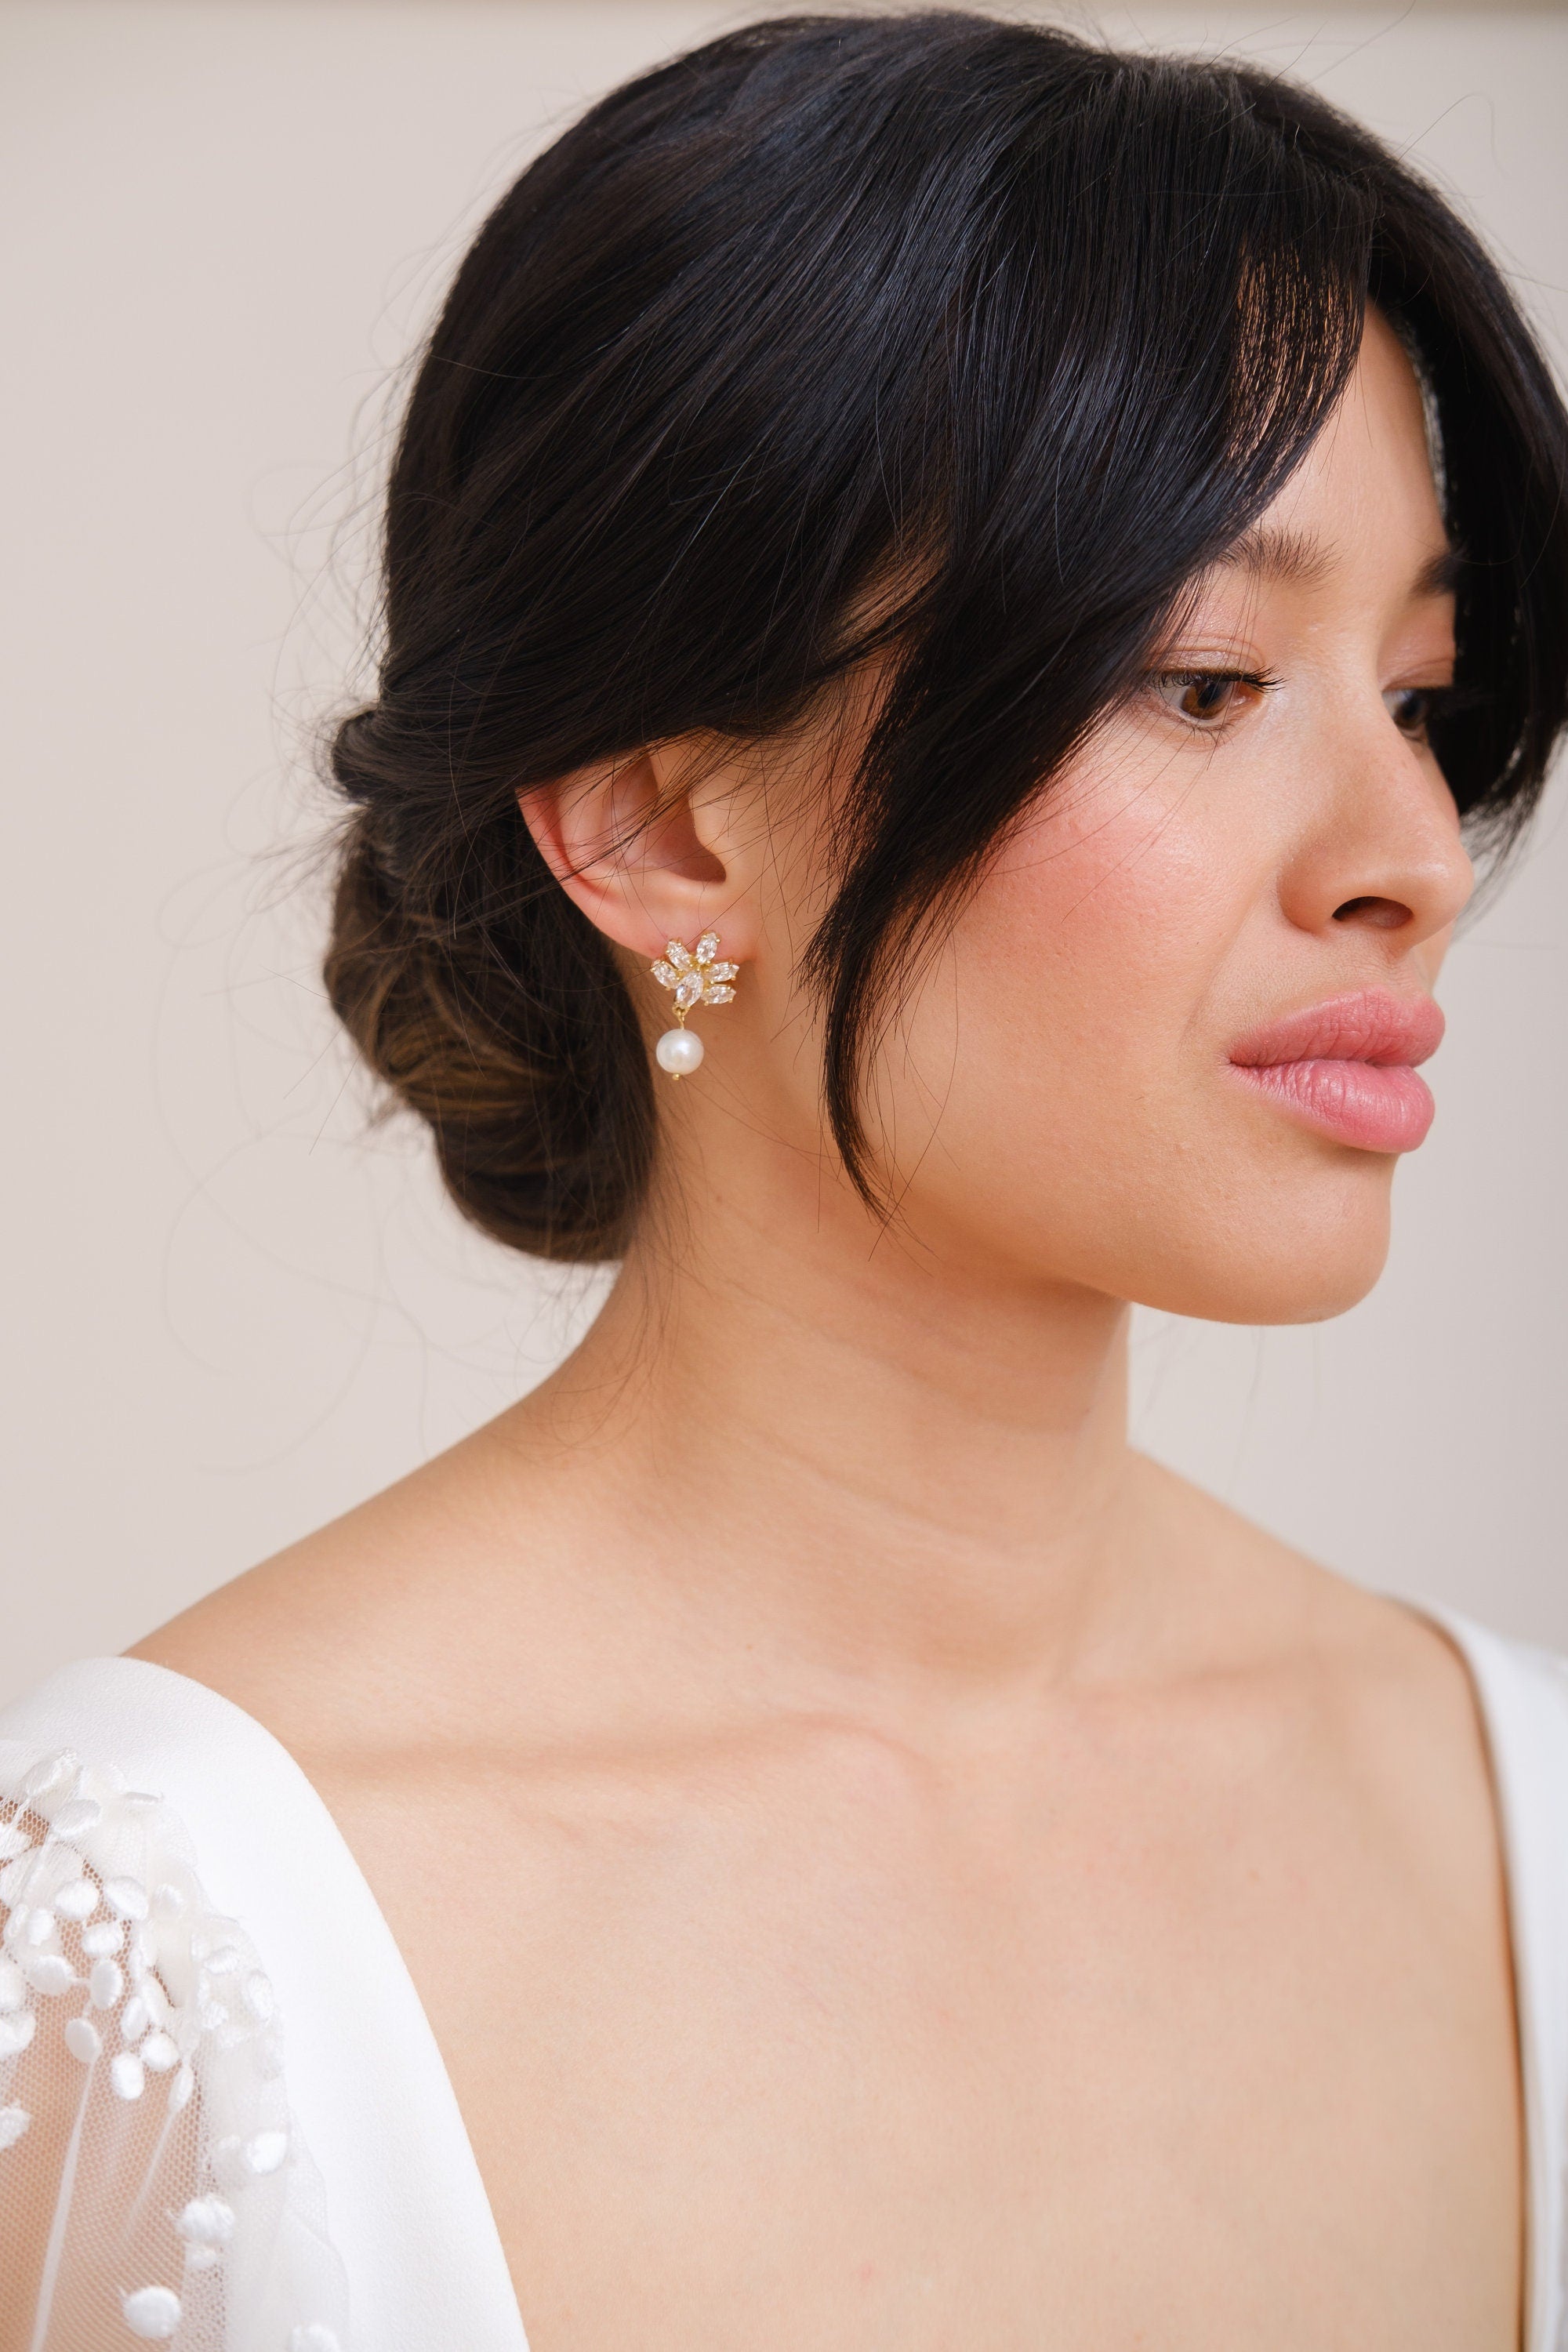 GAIA // Dainty pearl drop earrings